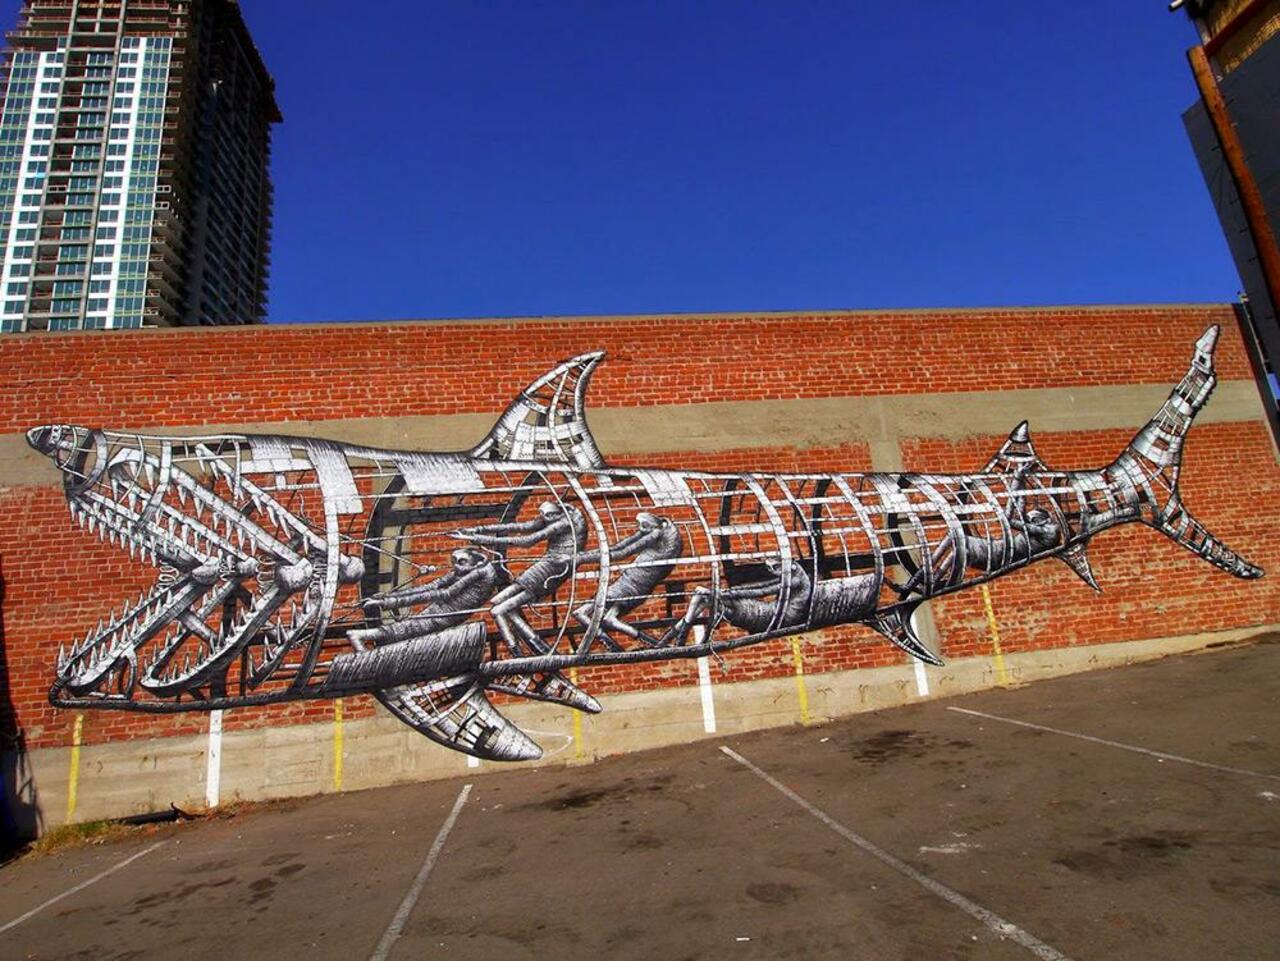 RT @HazelAddleyCoac: RT @DanielGennaoui Coolest mechanical shark mural. Check out more: http://buff.ly/1xsCQDL #graffiti #urbanart #artist http://t.co/Mmo8DcsJDs